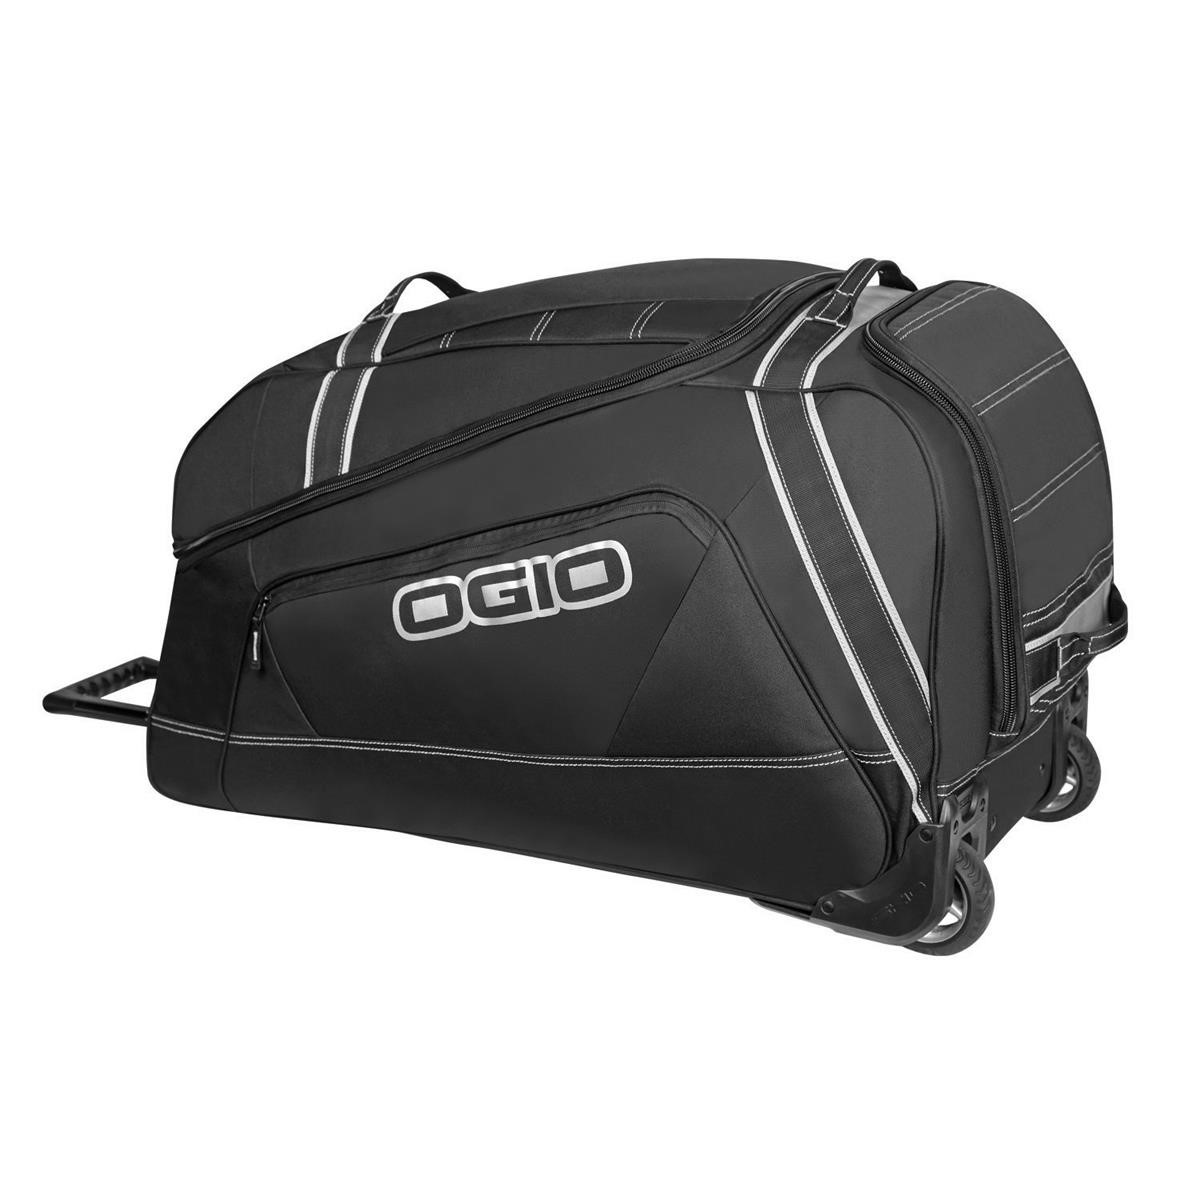 Ogio Travel Bag Big Mouth Wheel Bag Stealth/Black, 140 Liter